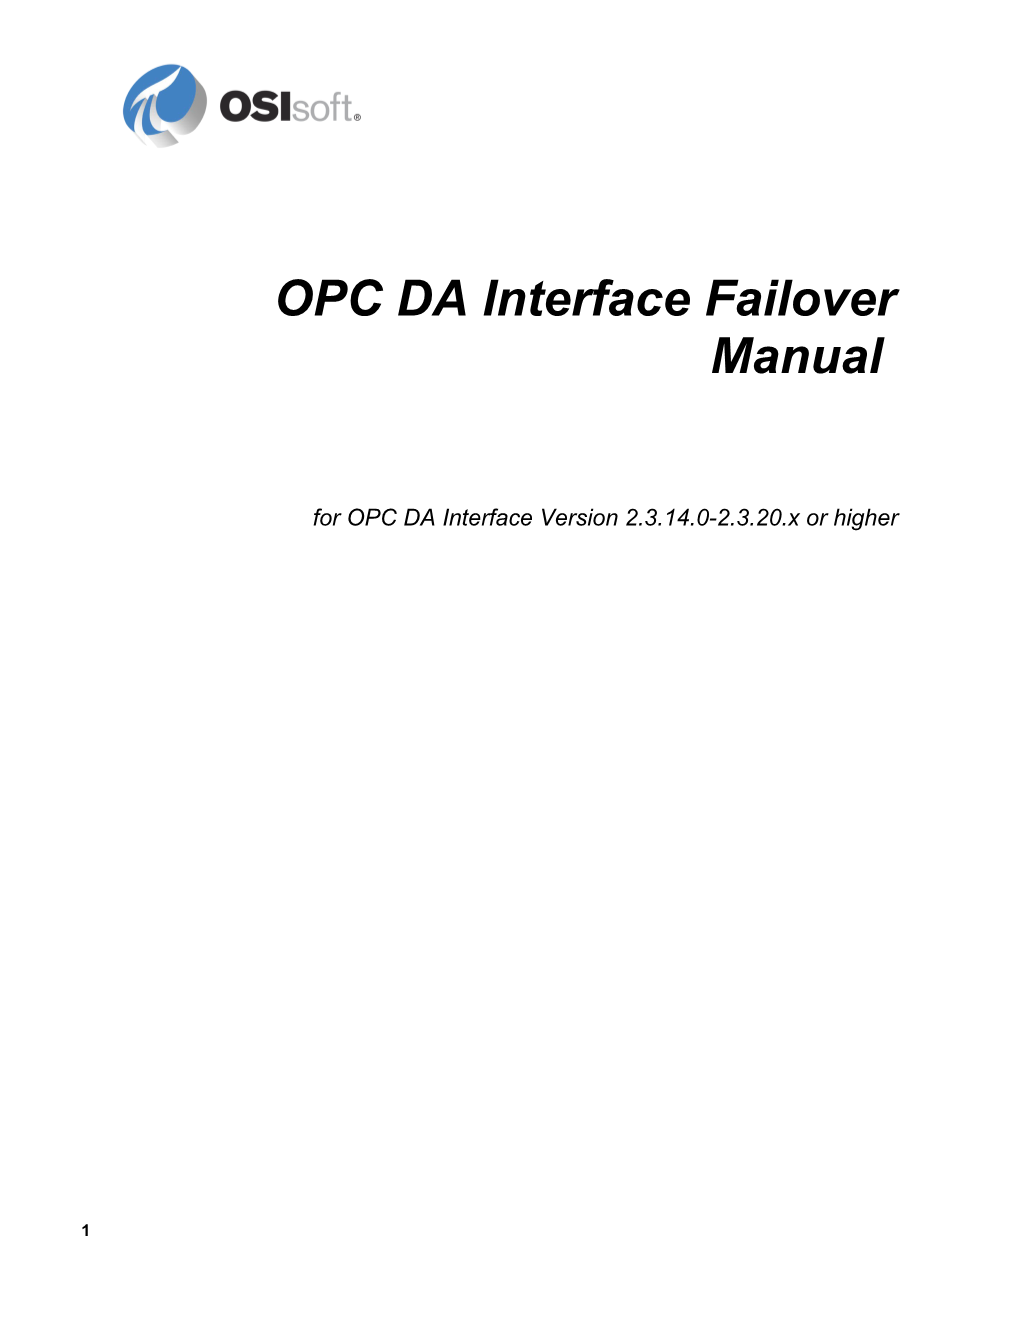 OPC DA Interface Failover Manual